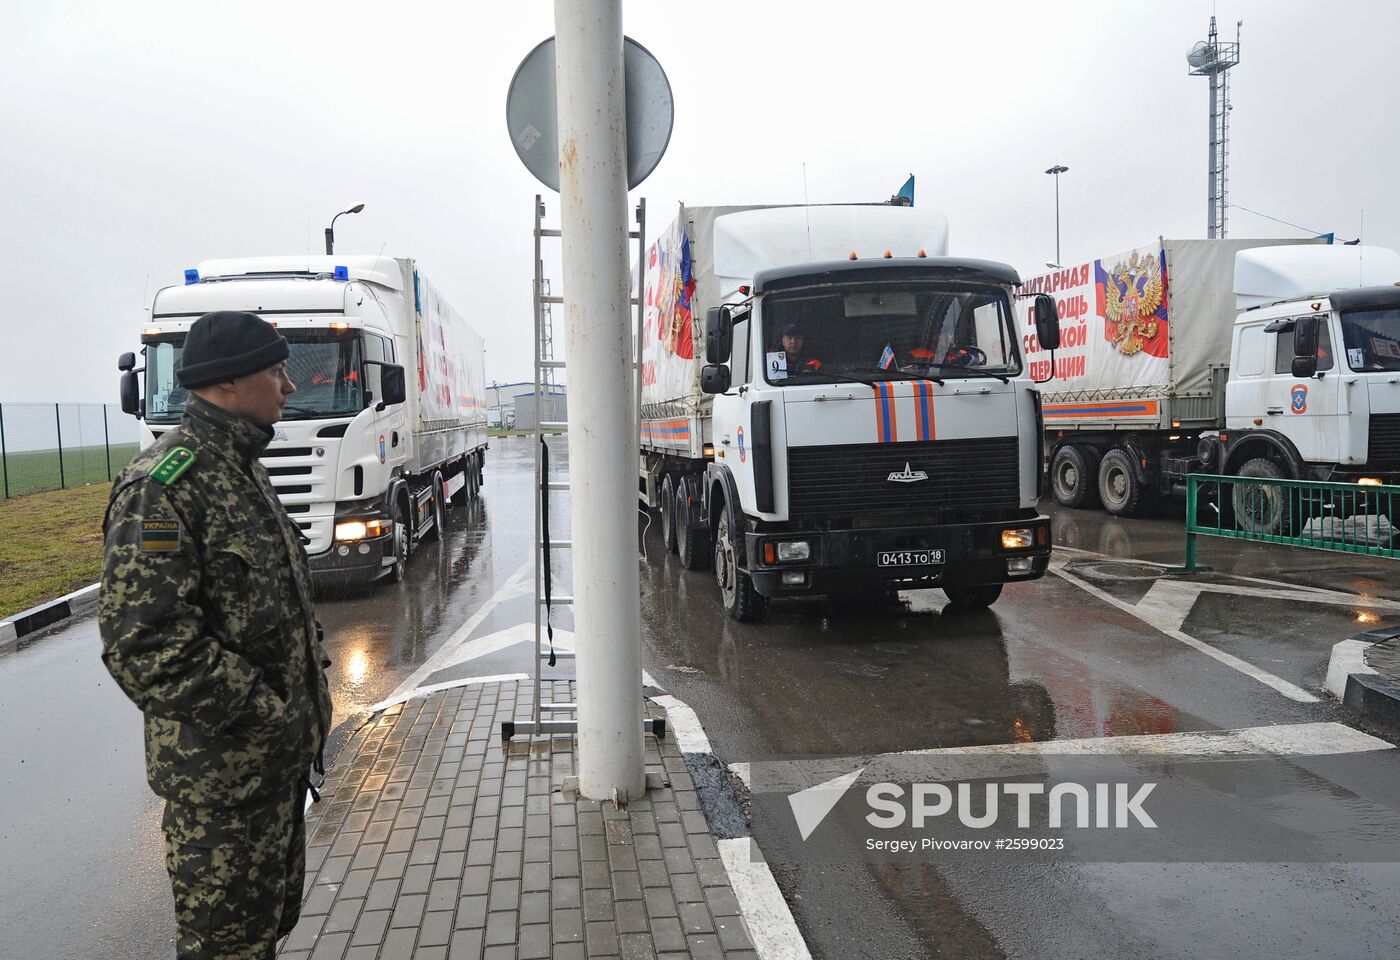 23rd humanitarian aid convoy for Donbass at Matveyev Kurgan checkpoint